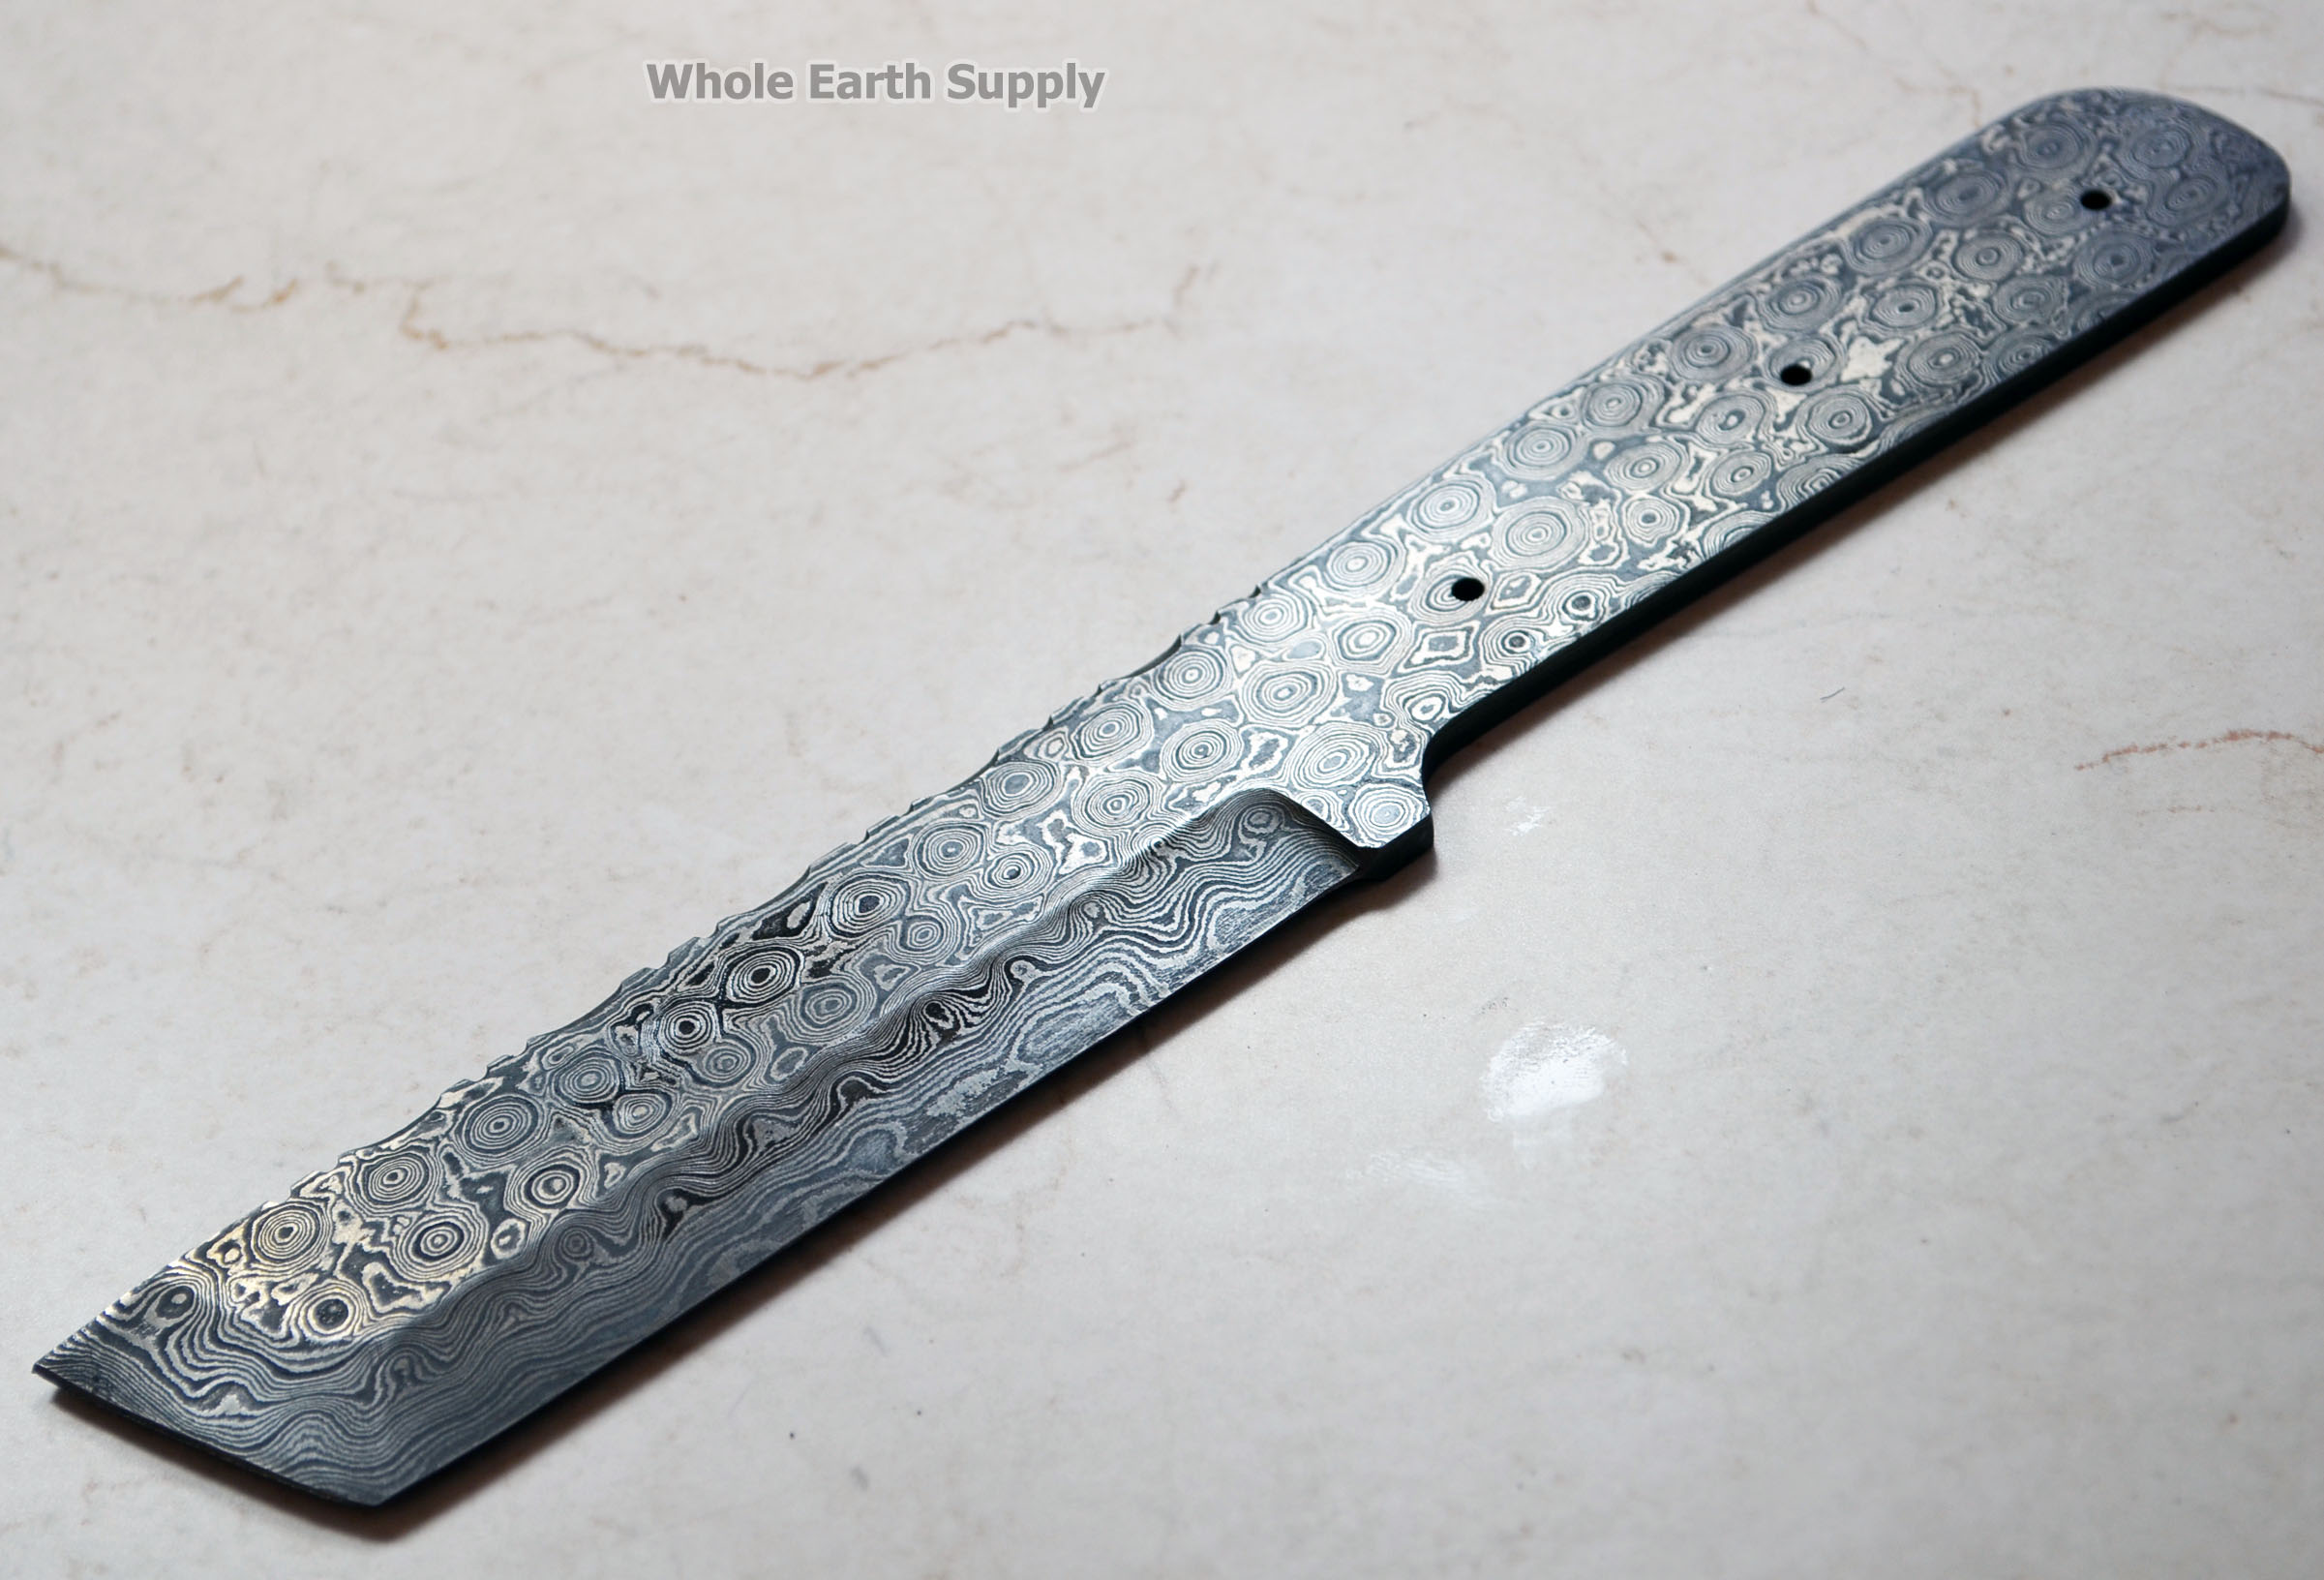 Damascus Knife Blank Blade Making Tanto Skinning Skinner Best Steel